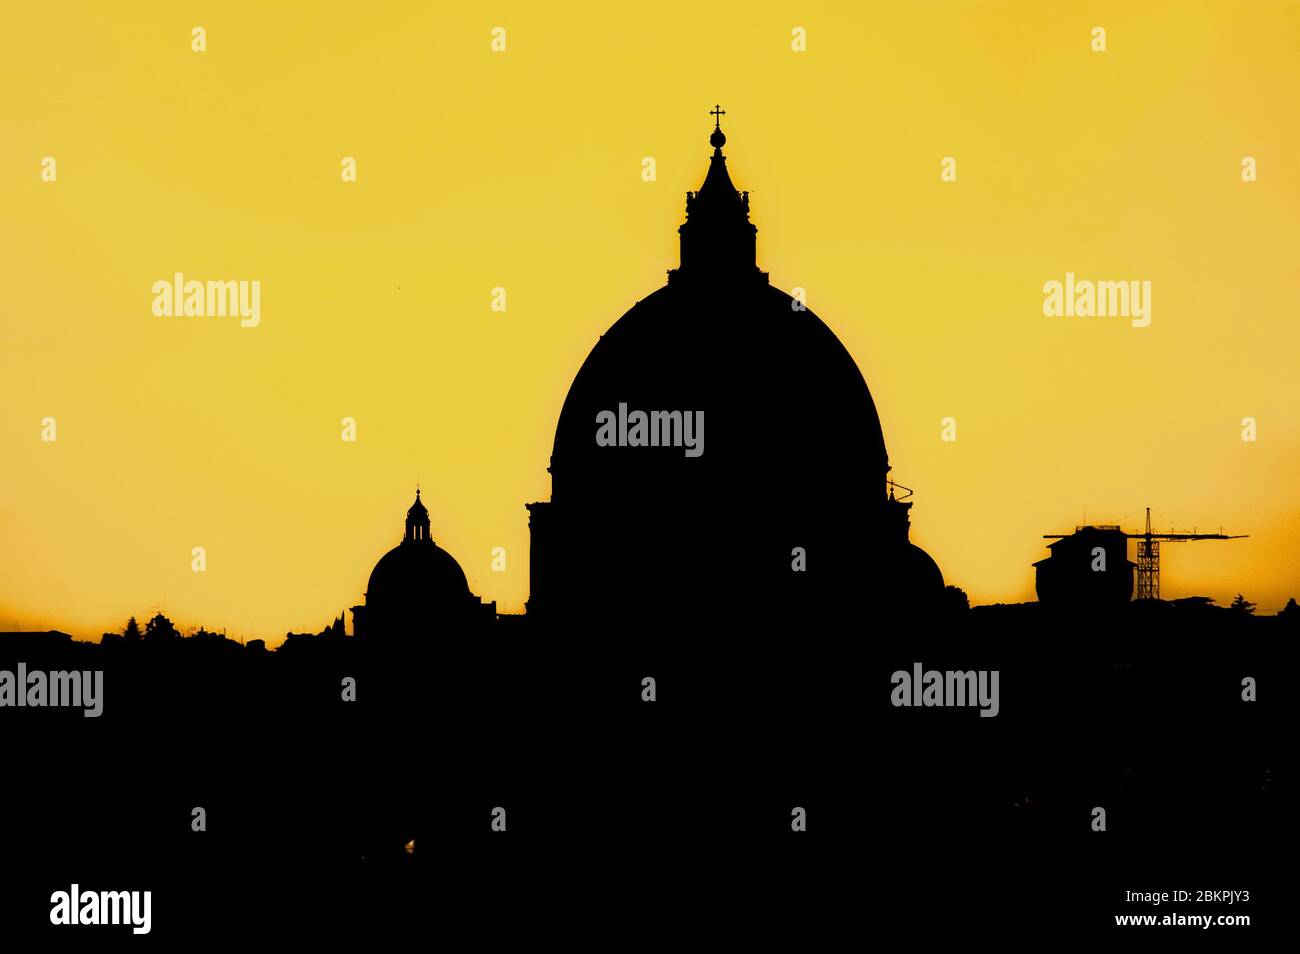 Il Duomo del Vaticano a polvere da lontano. Questa è una versione colorata con cupola nera in argento contro un cielo giallo Foto Stock